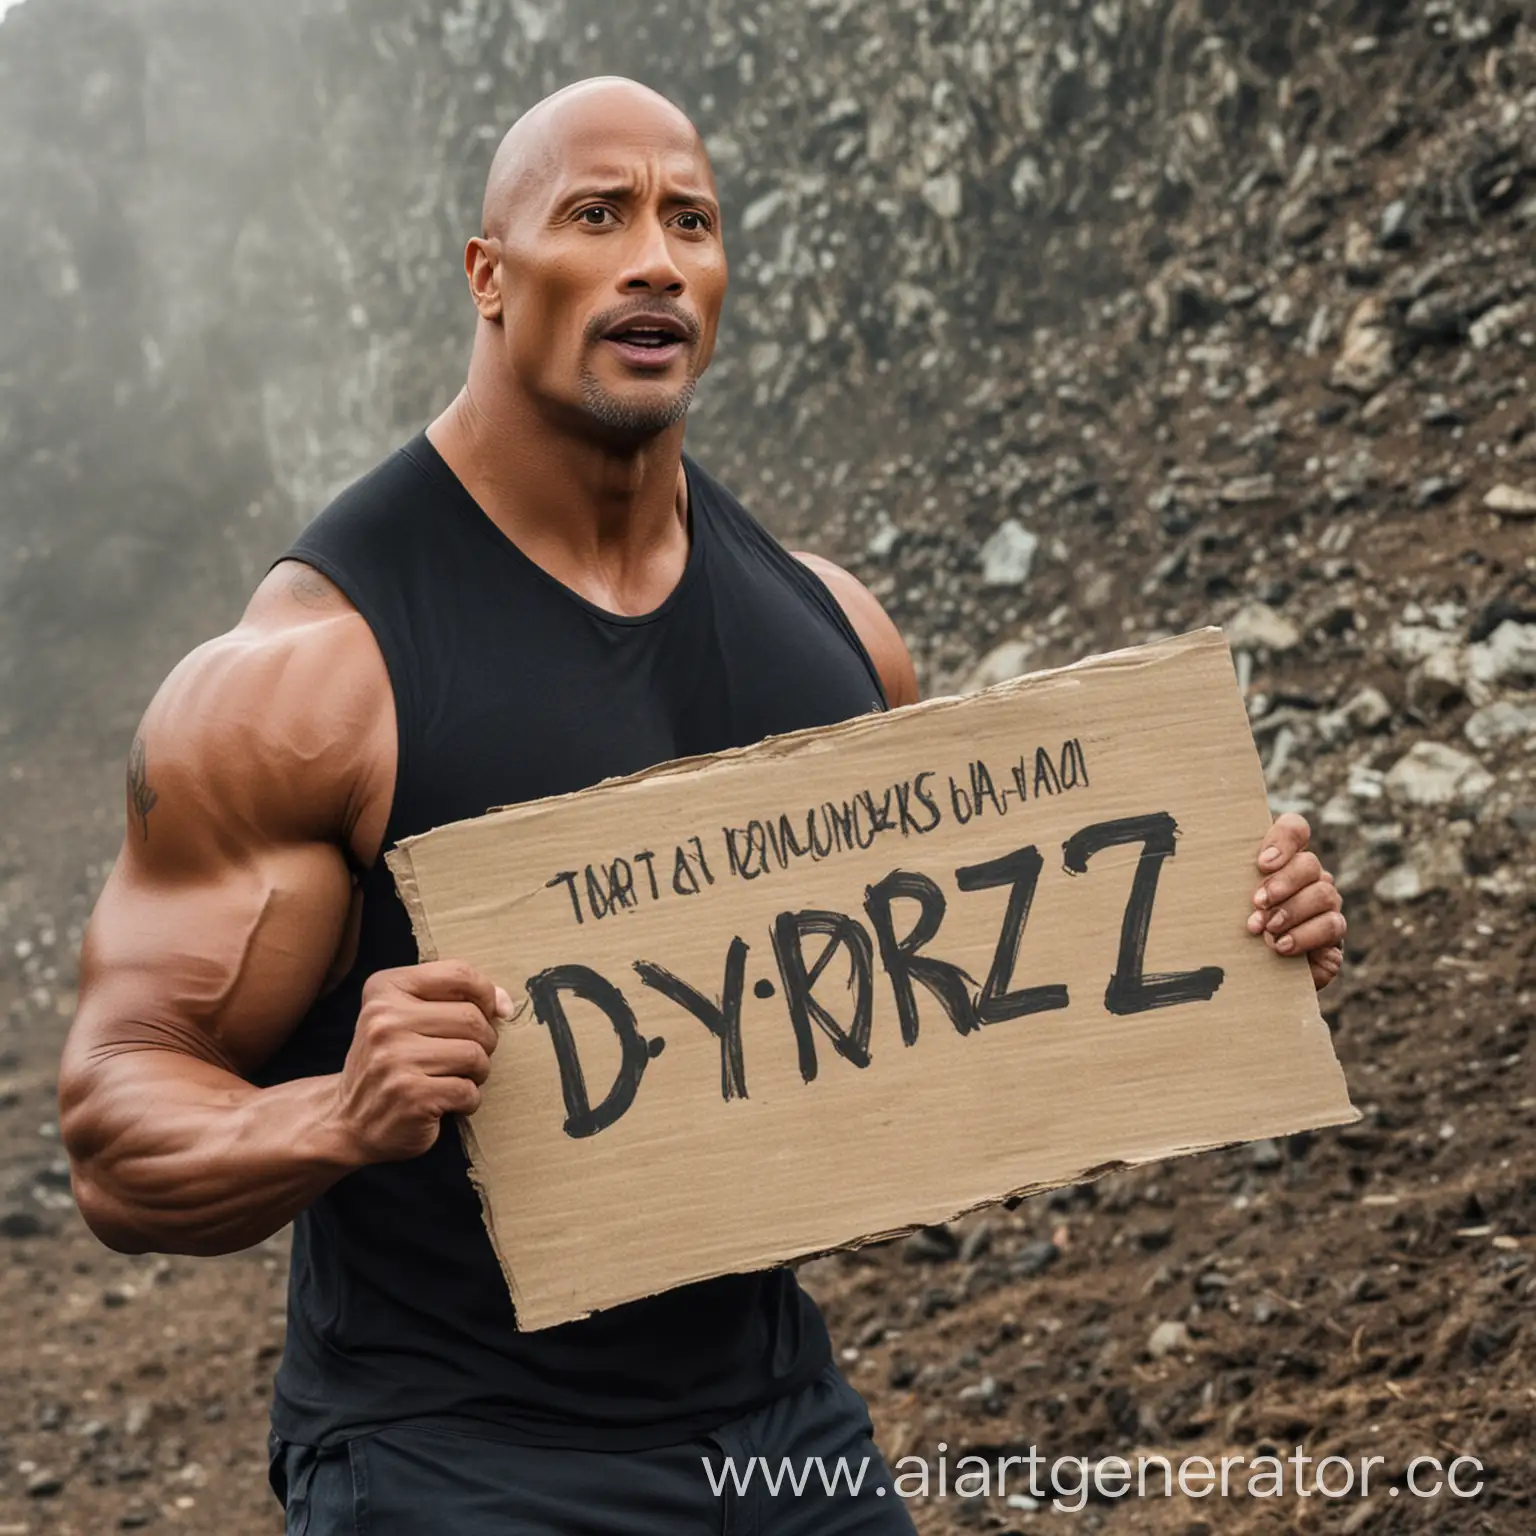 Скала Дуэйн Джонсон  держит табличку с надписью "Dyrqiz"
